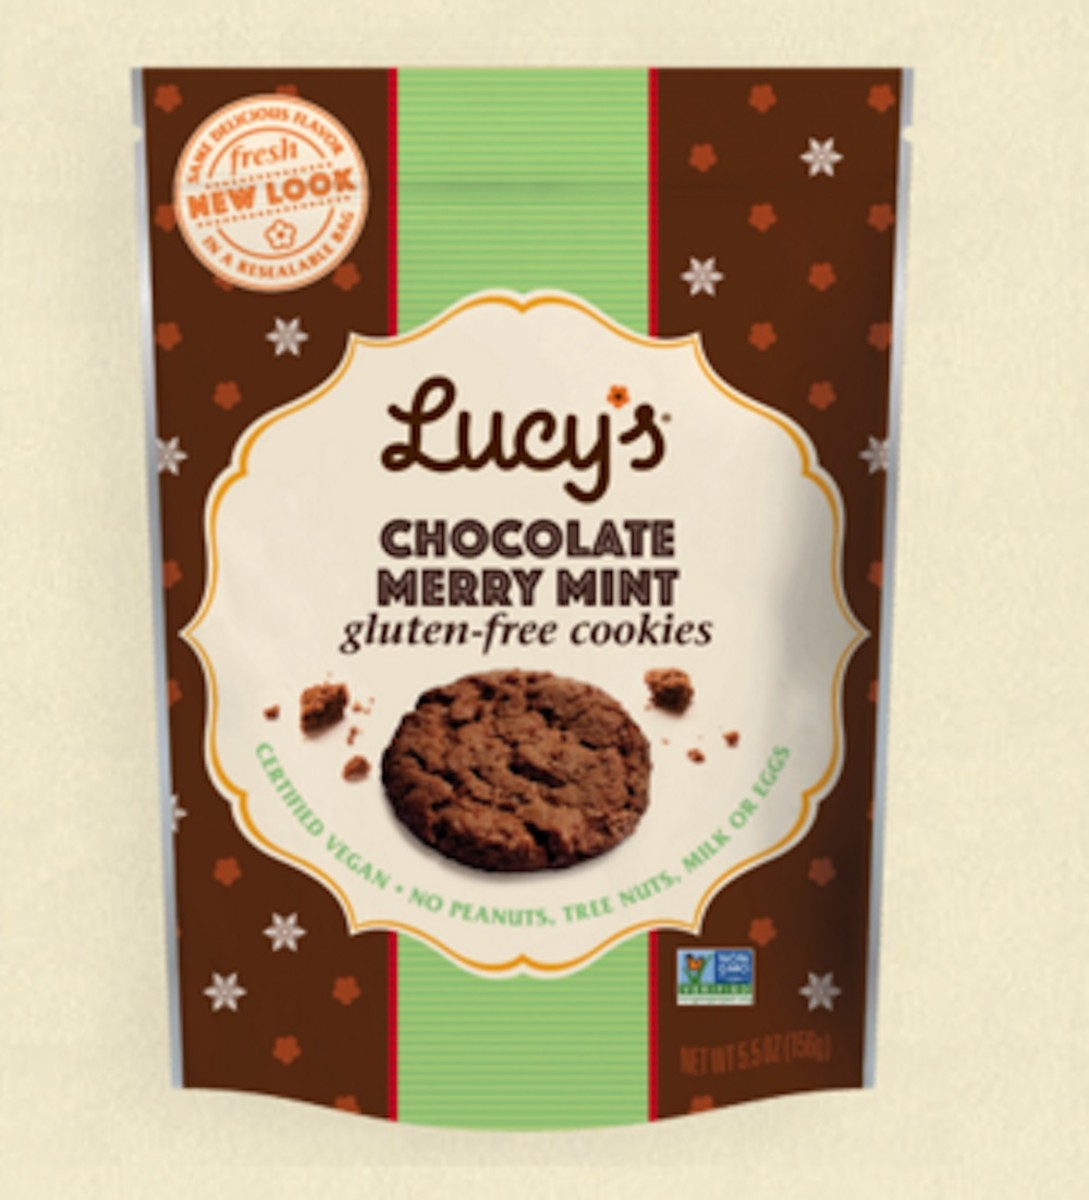 Lucy's Vegan Cookies